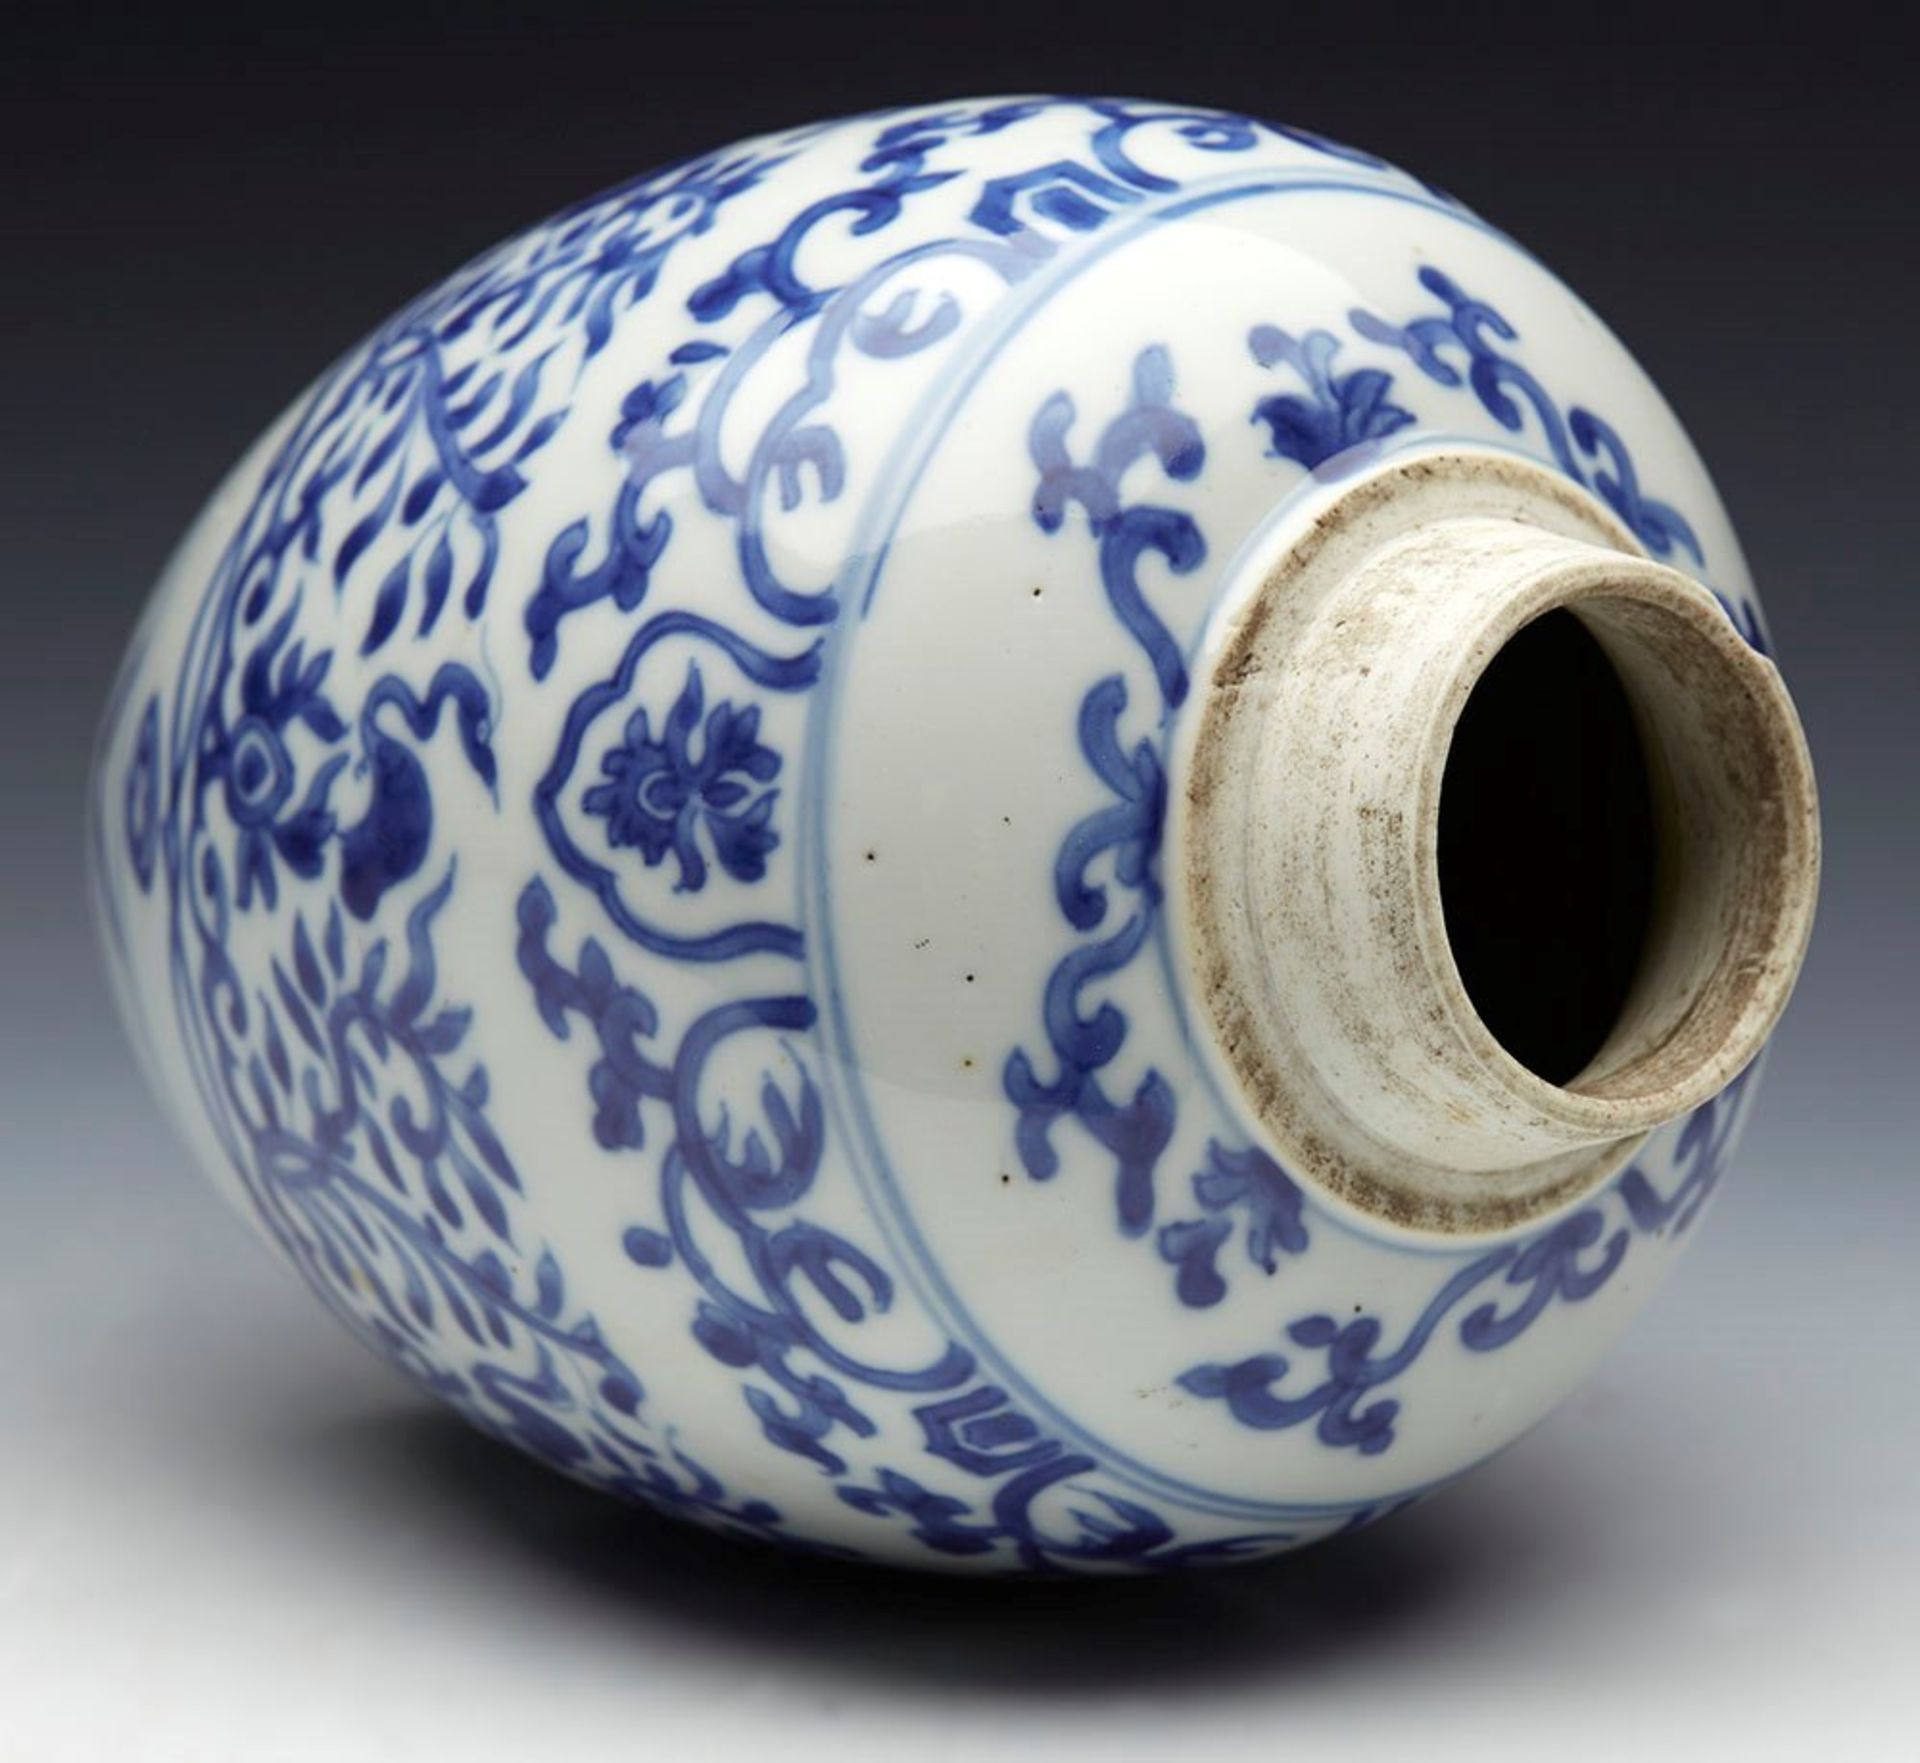 Antique Chinese Kangxi Jar 1662 - 1722 - Image 2 of 10